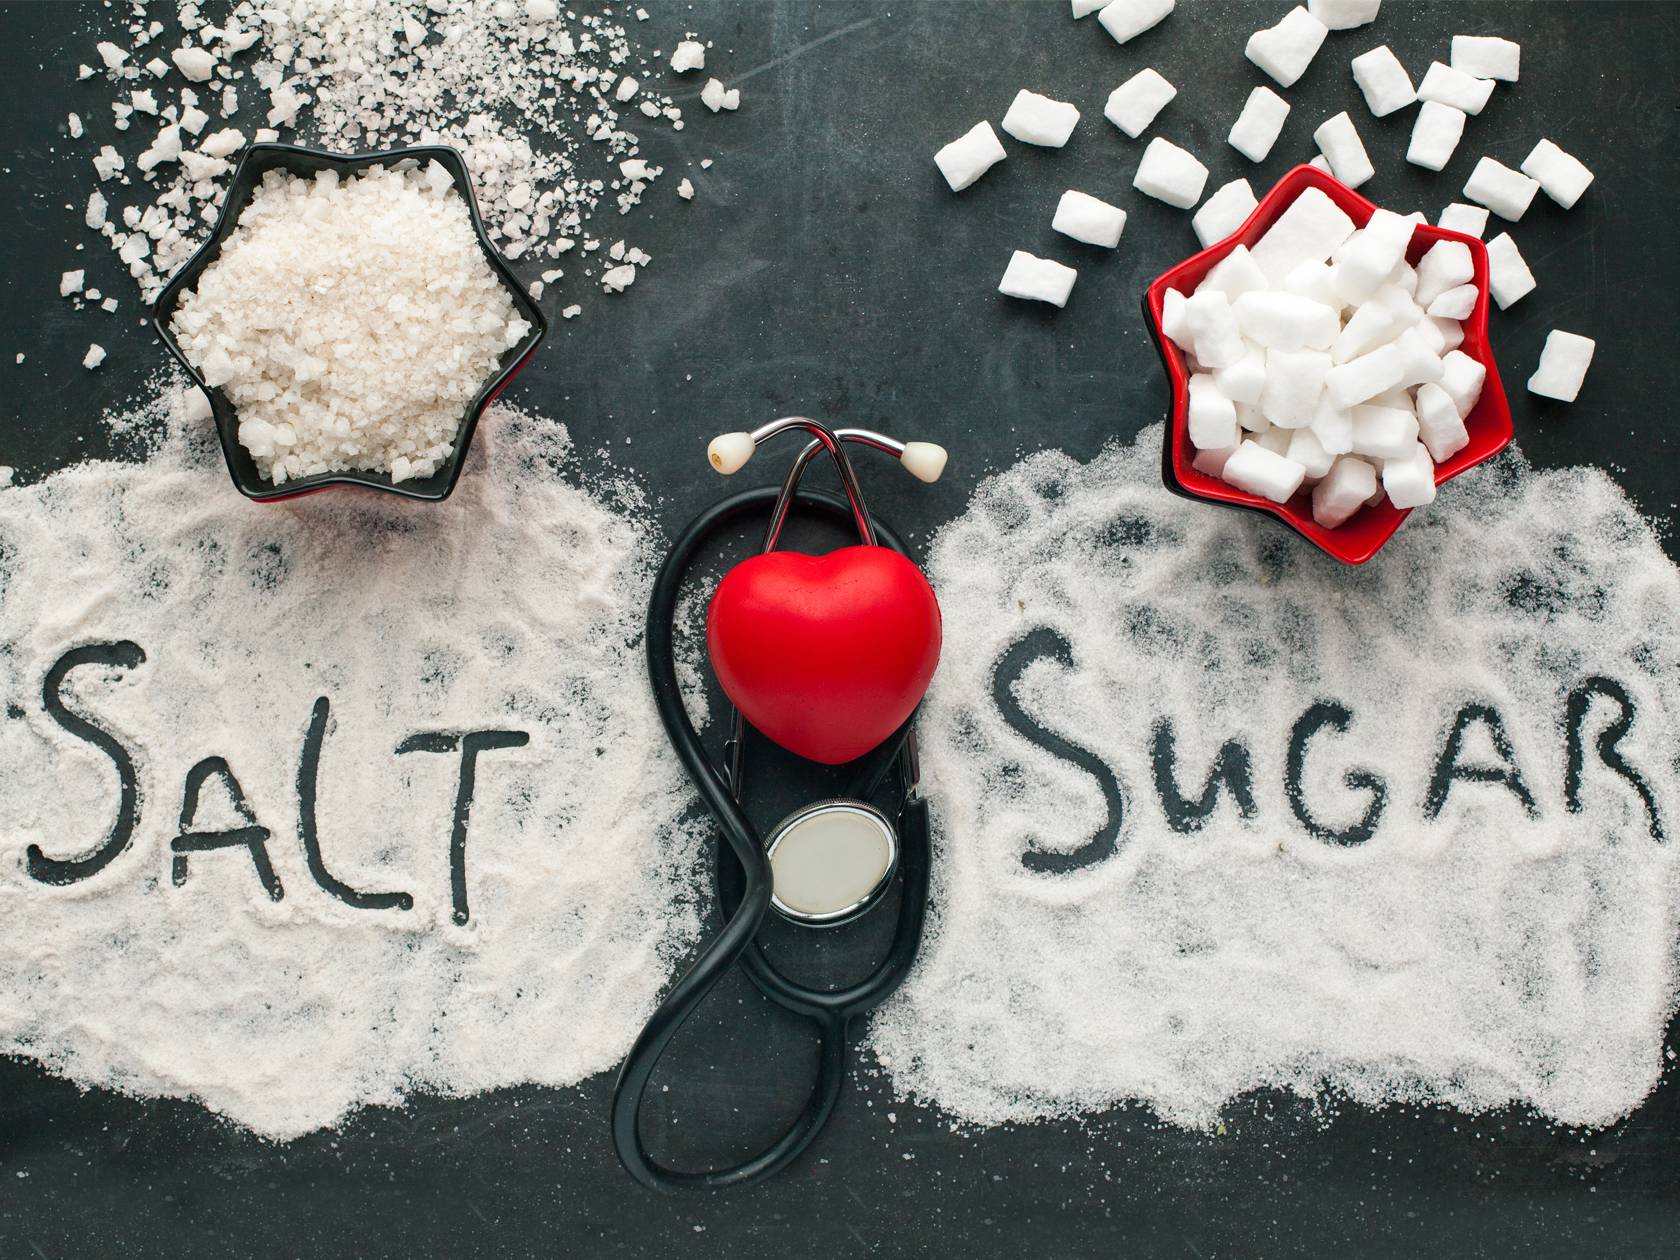 Tovább csökken a só-és cukormennyiség a Lidl termékeiben